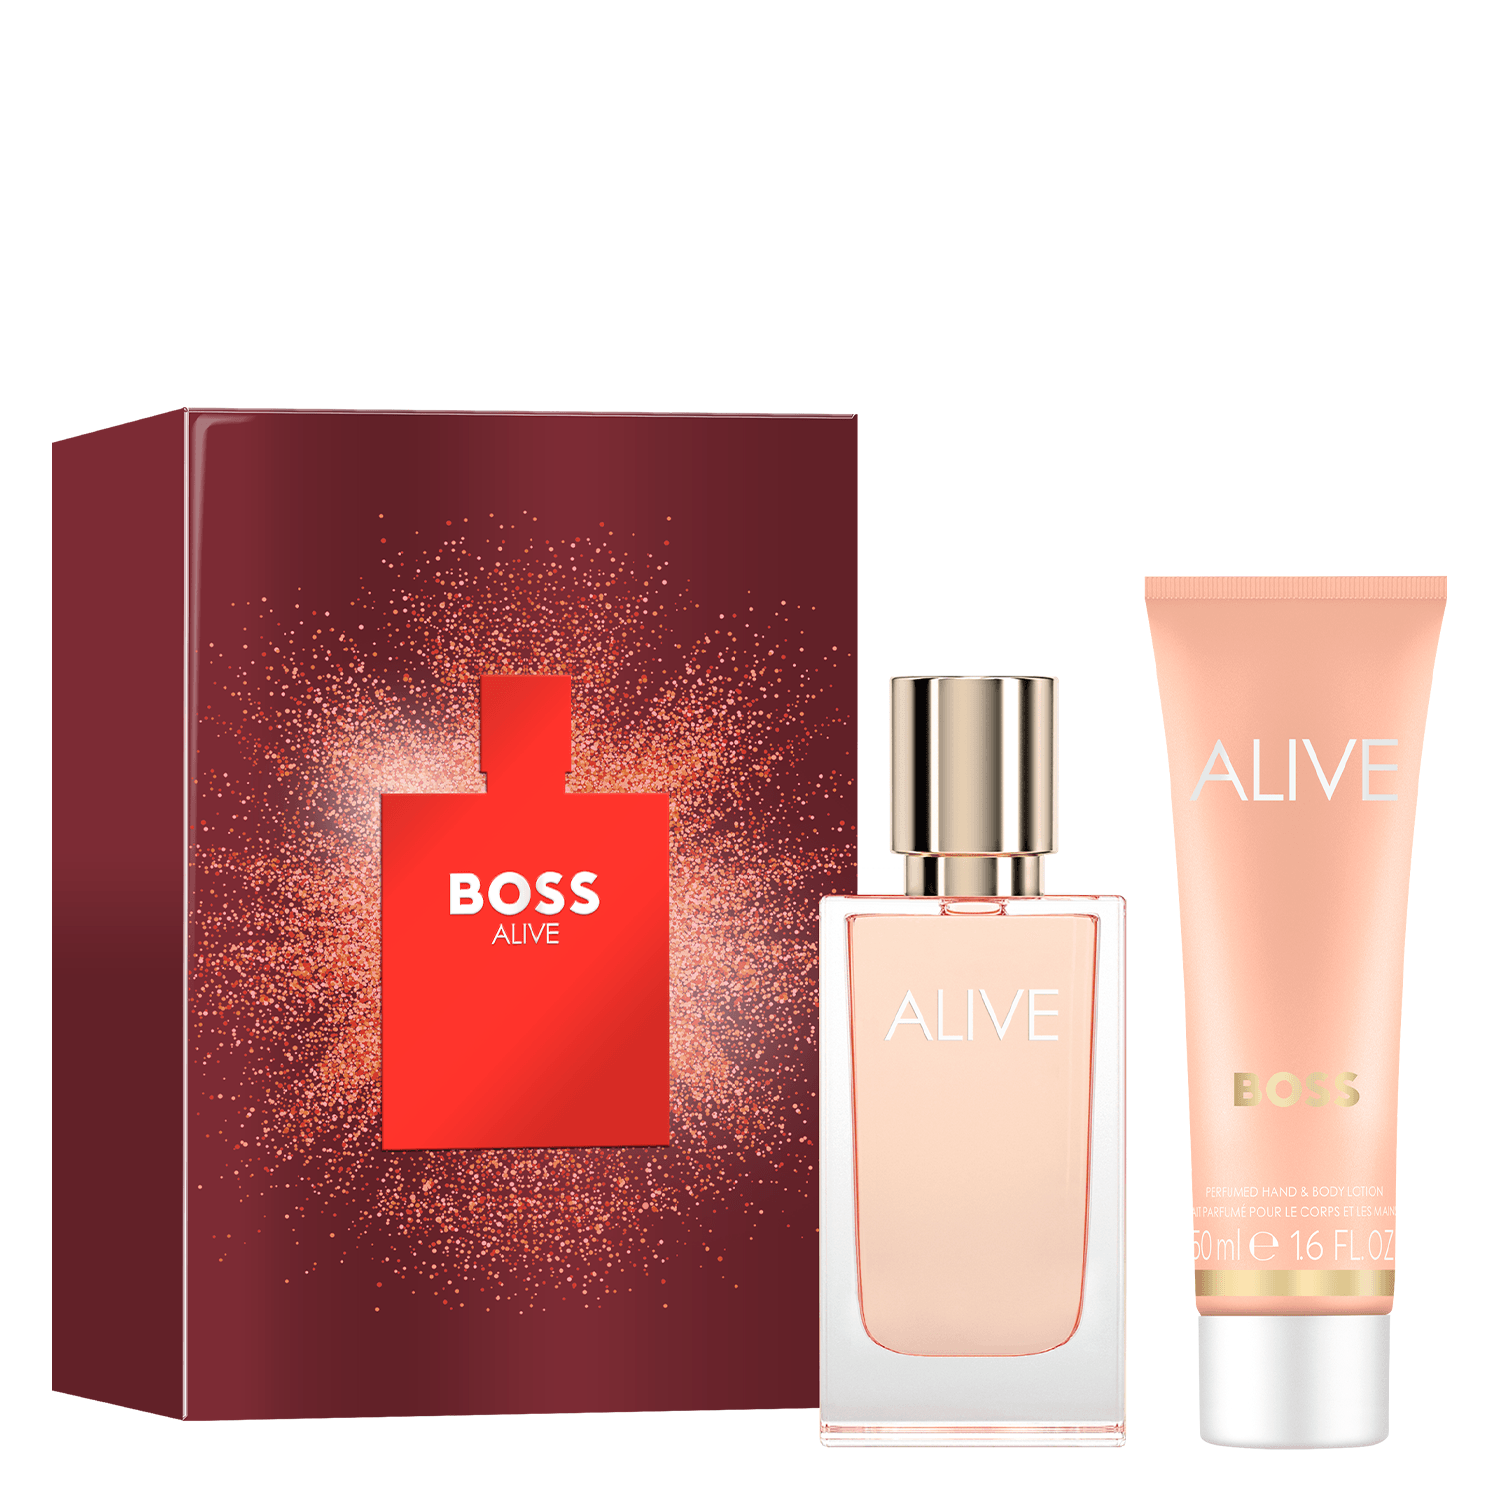 Product image from Boss Alive - Eau de Parfum Kit